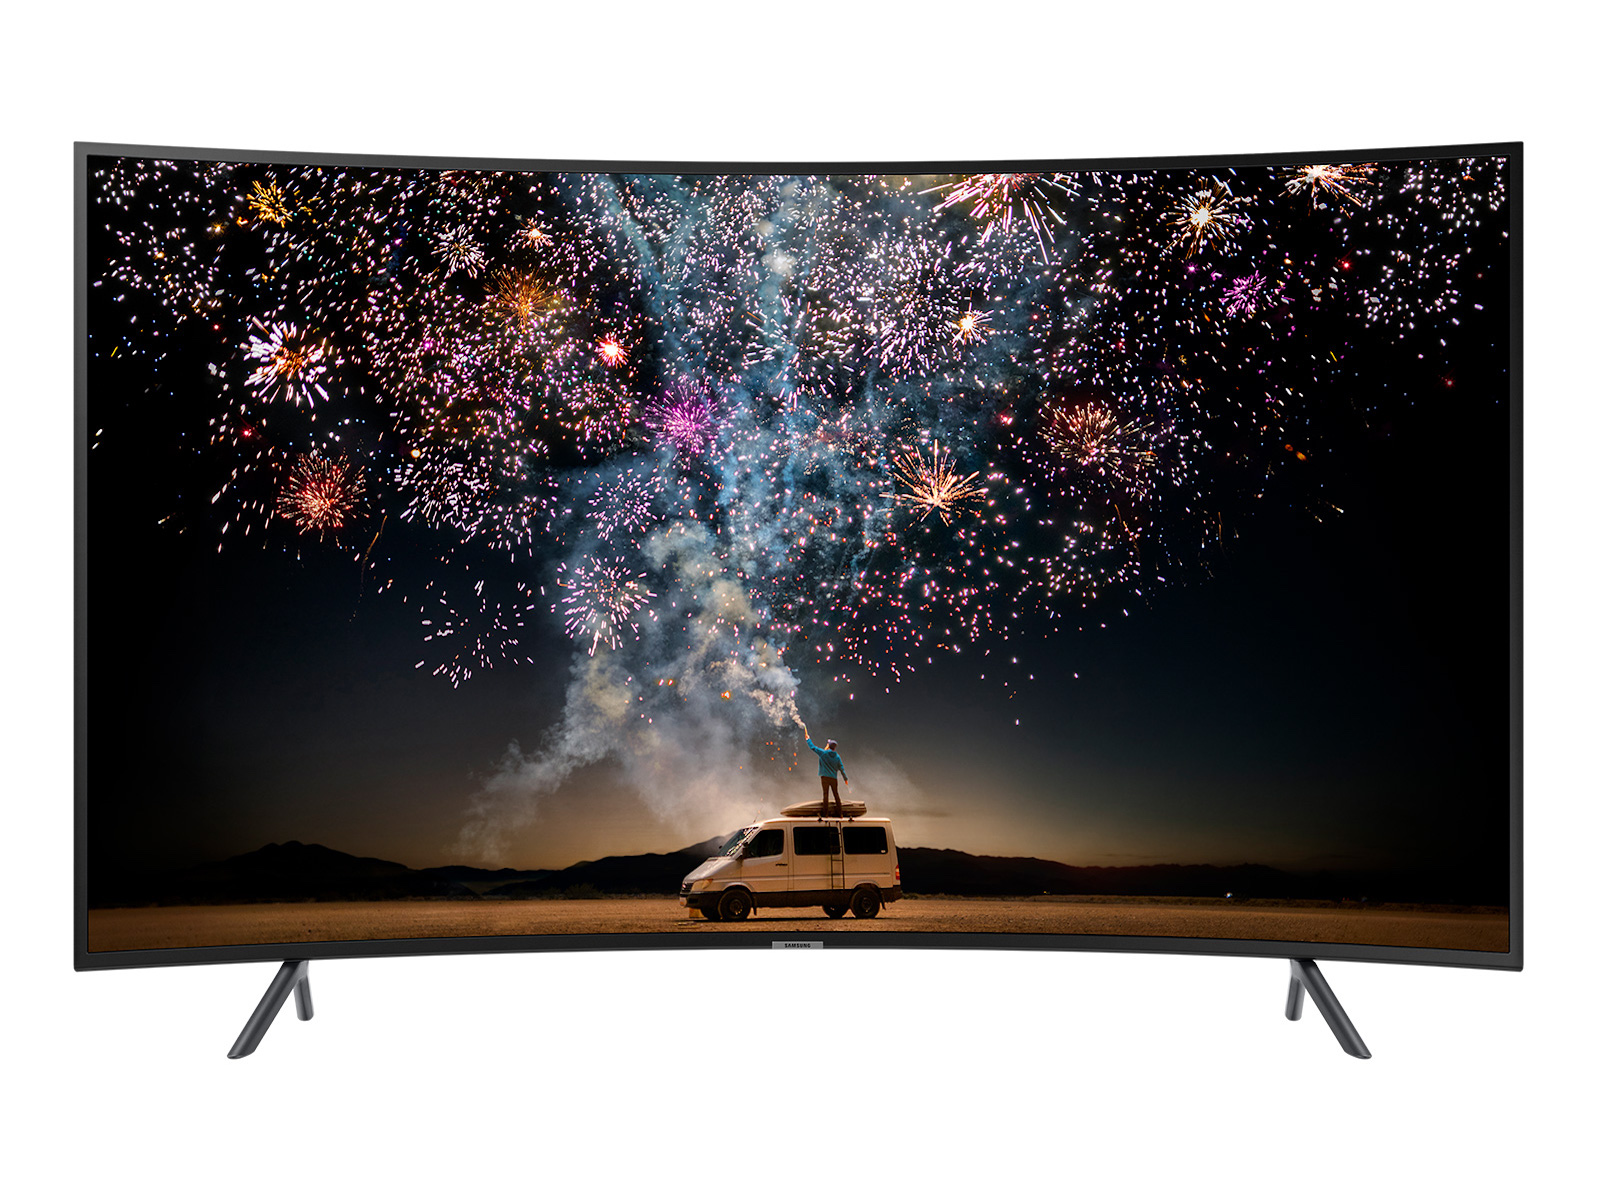 Samsung UN55RU7300FXZA - Smart TV curvo 4K UHD 7 Series Ultra HD de 55  pulgadas con HDR y compatibilidad con Alexa (modelo 2019)